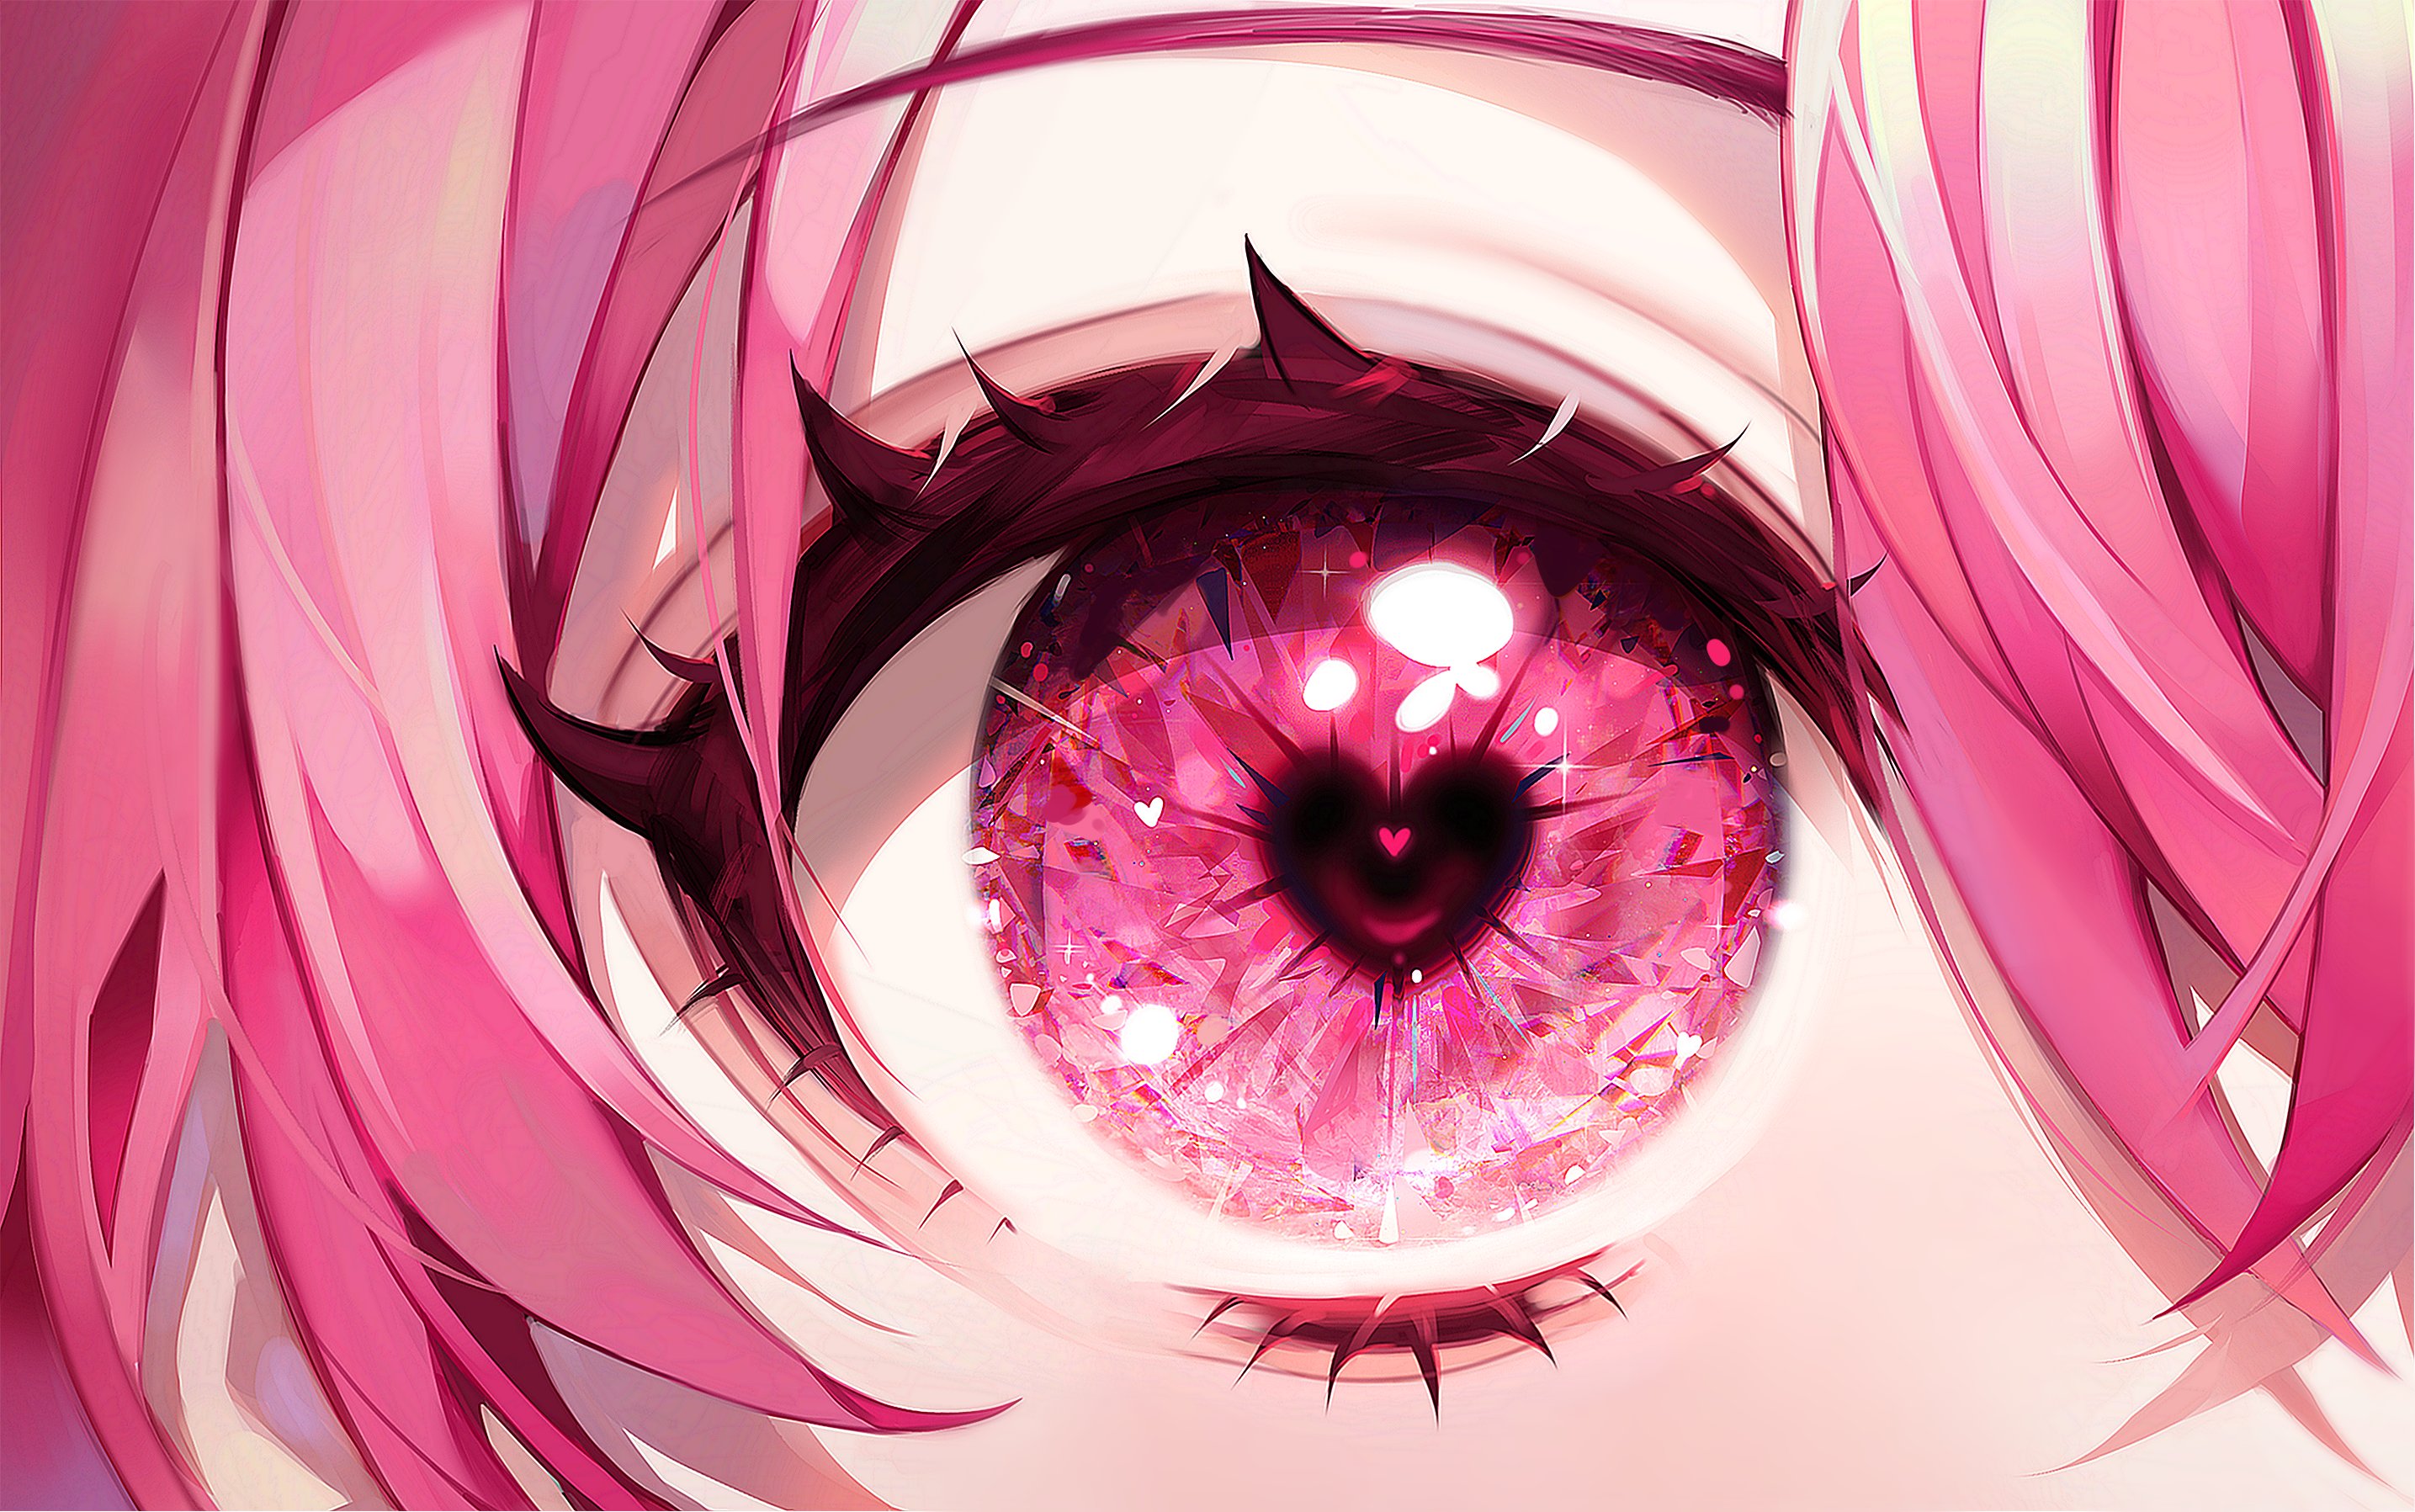 HD wallpaper anime closeup eye human eye eyelash young adult  looking at camera  Wallpaper Flare